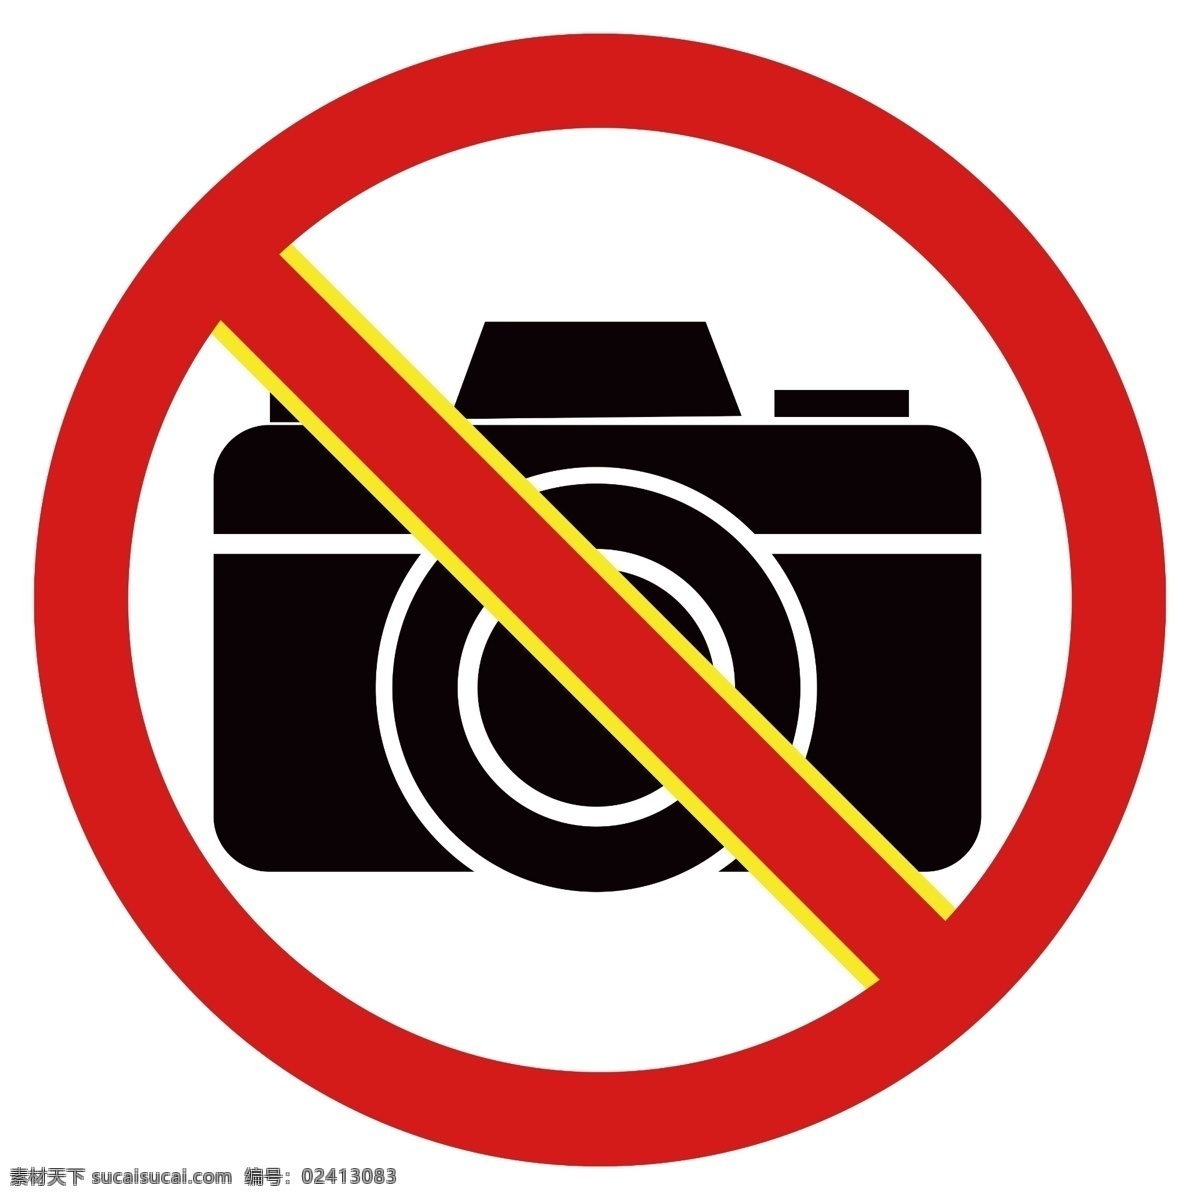 禁止拍摄 严禁拍摄 禁止拍摄标志 禁止拍摄图标 严禁拍摄标志 严禁拍摄图标